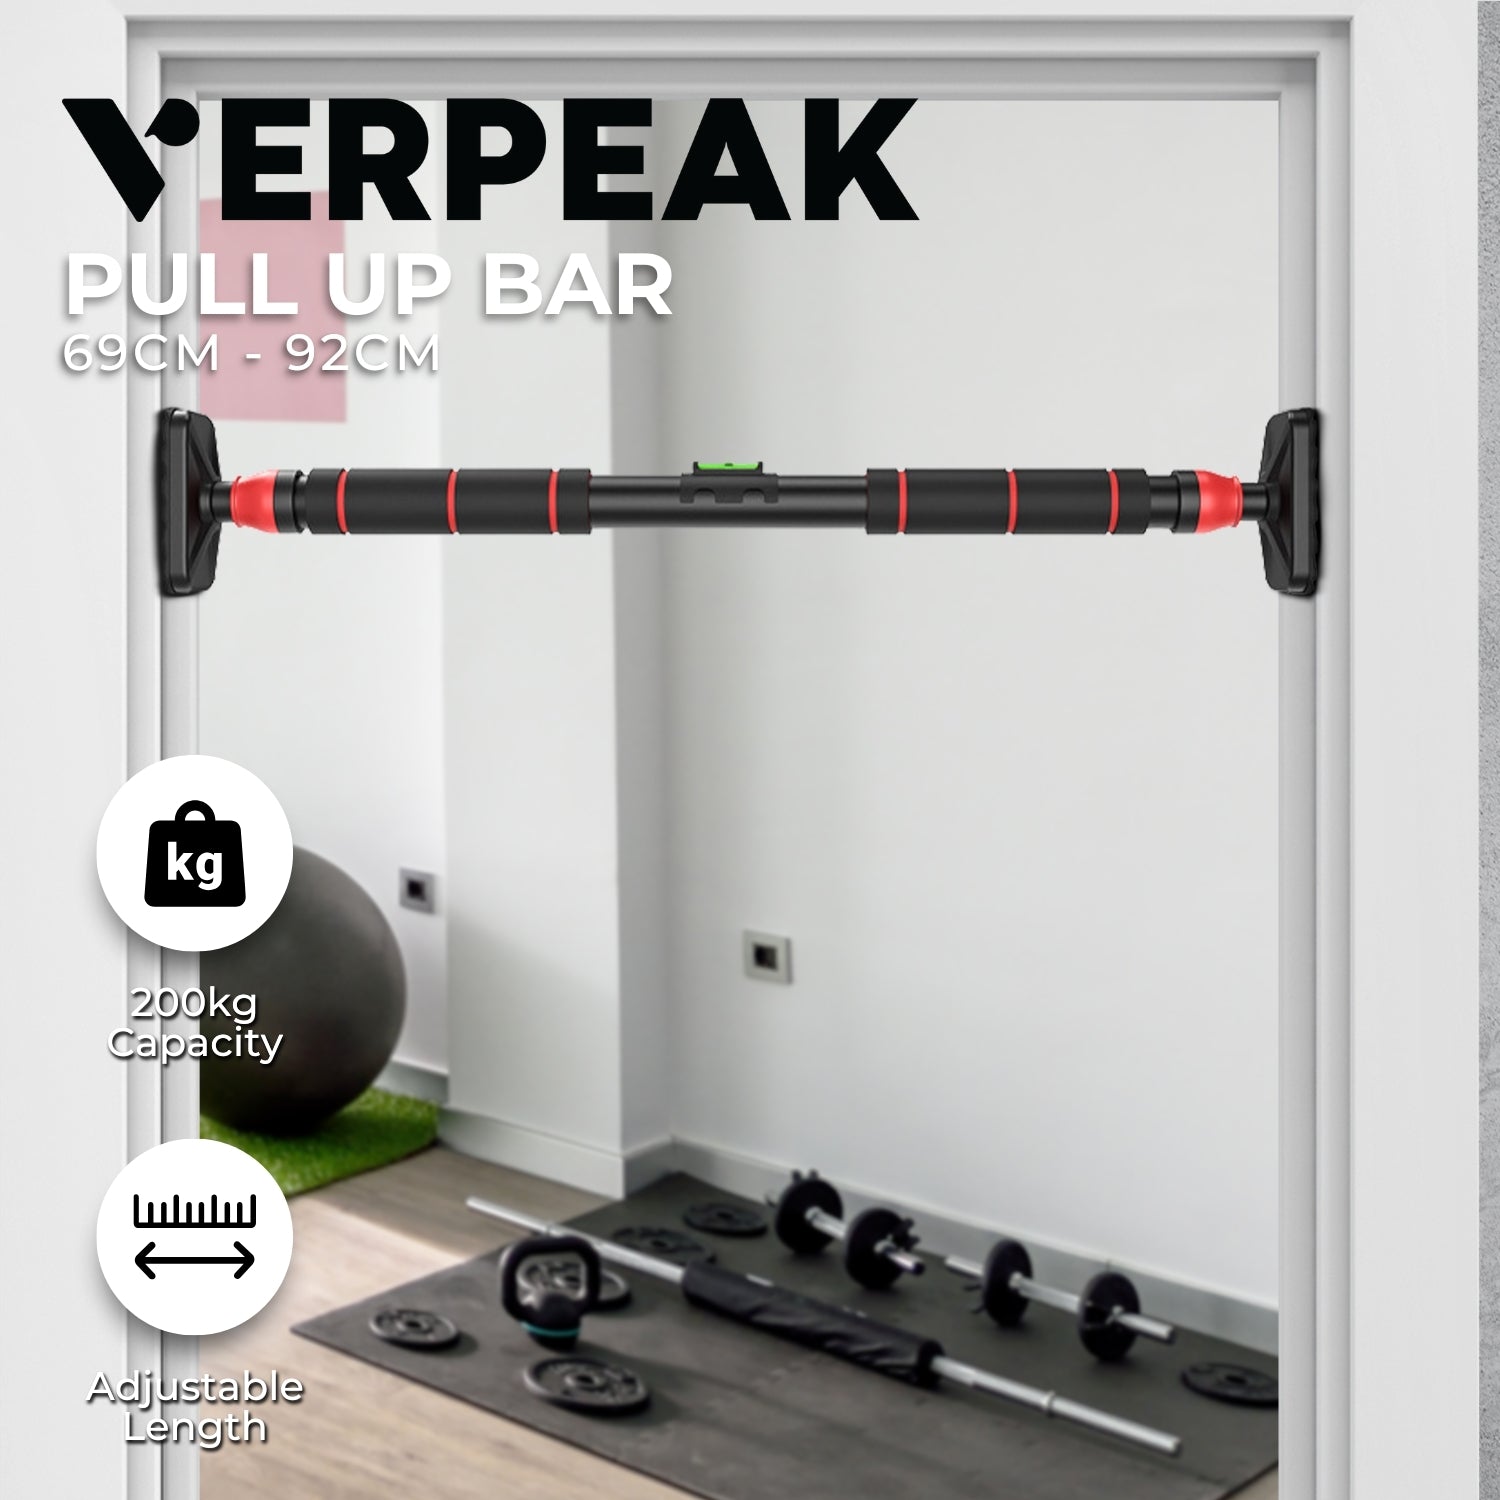 VERPEAK Multi-Functional Essential Pull Up Bar (200kg Capacity)